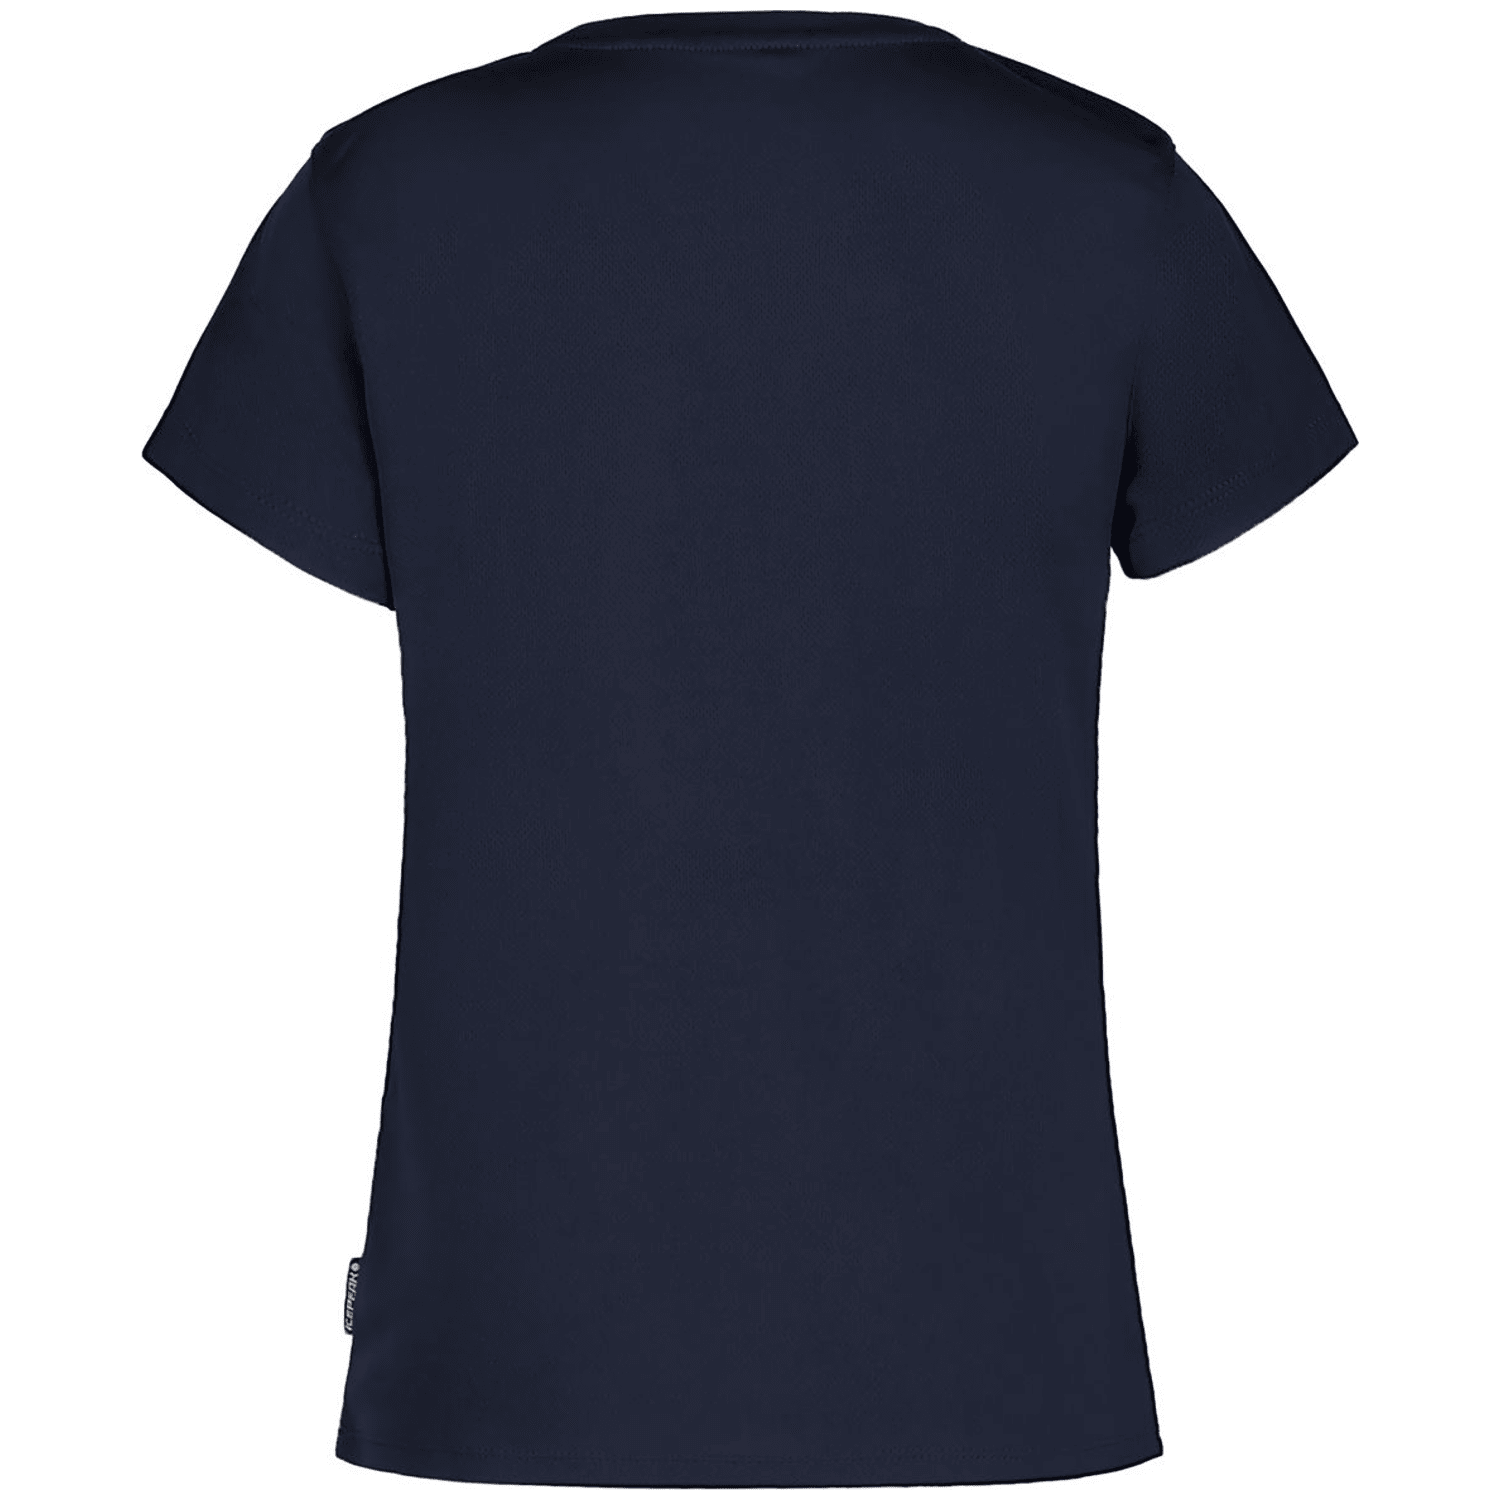 Icepeak Kearney Mädchen T-Shirt